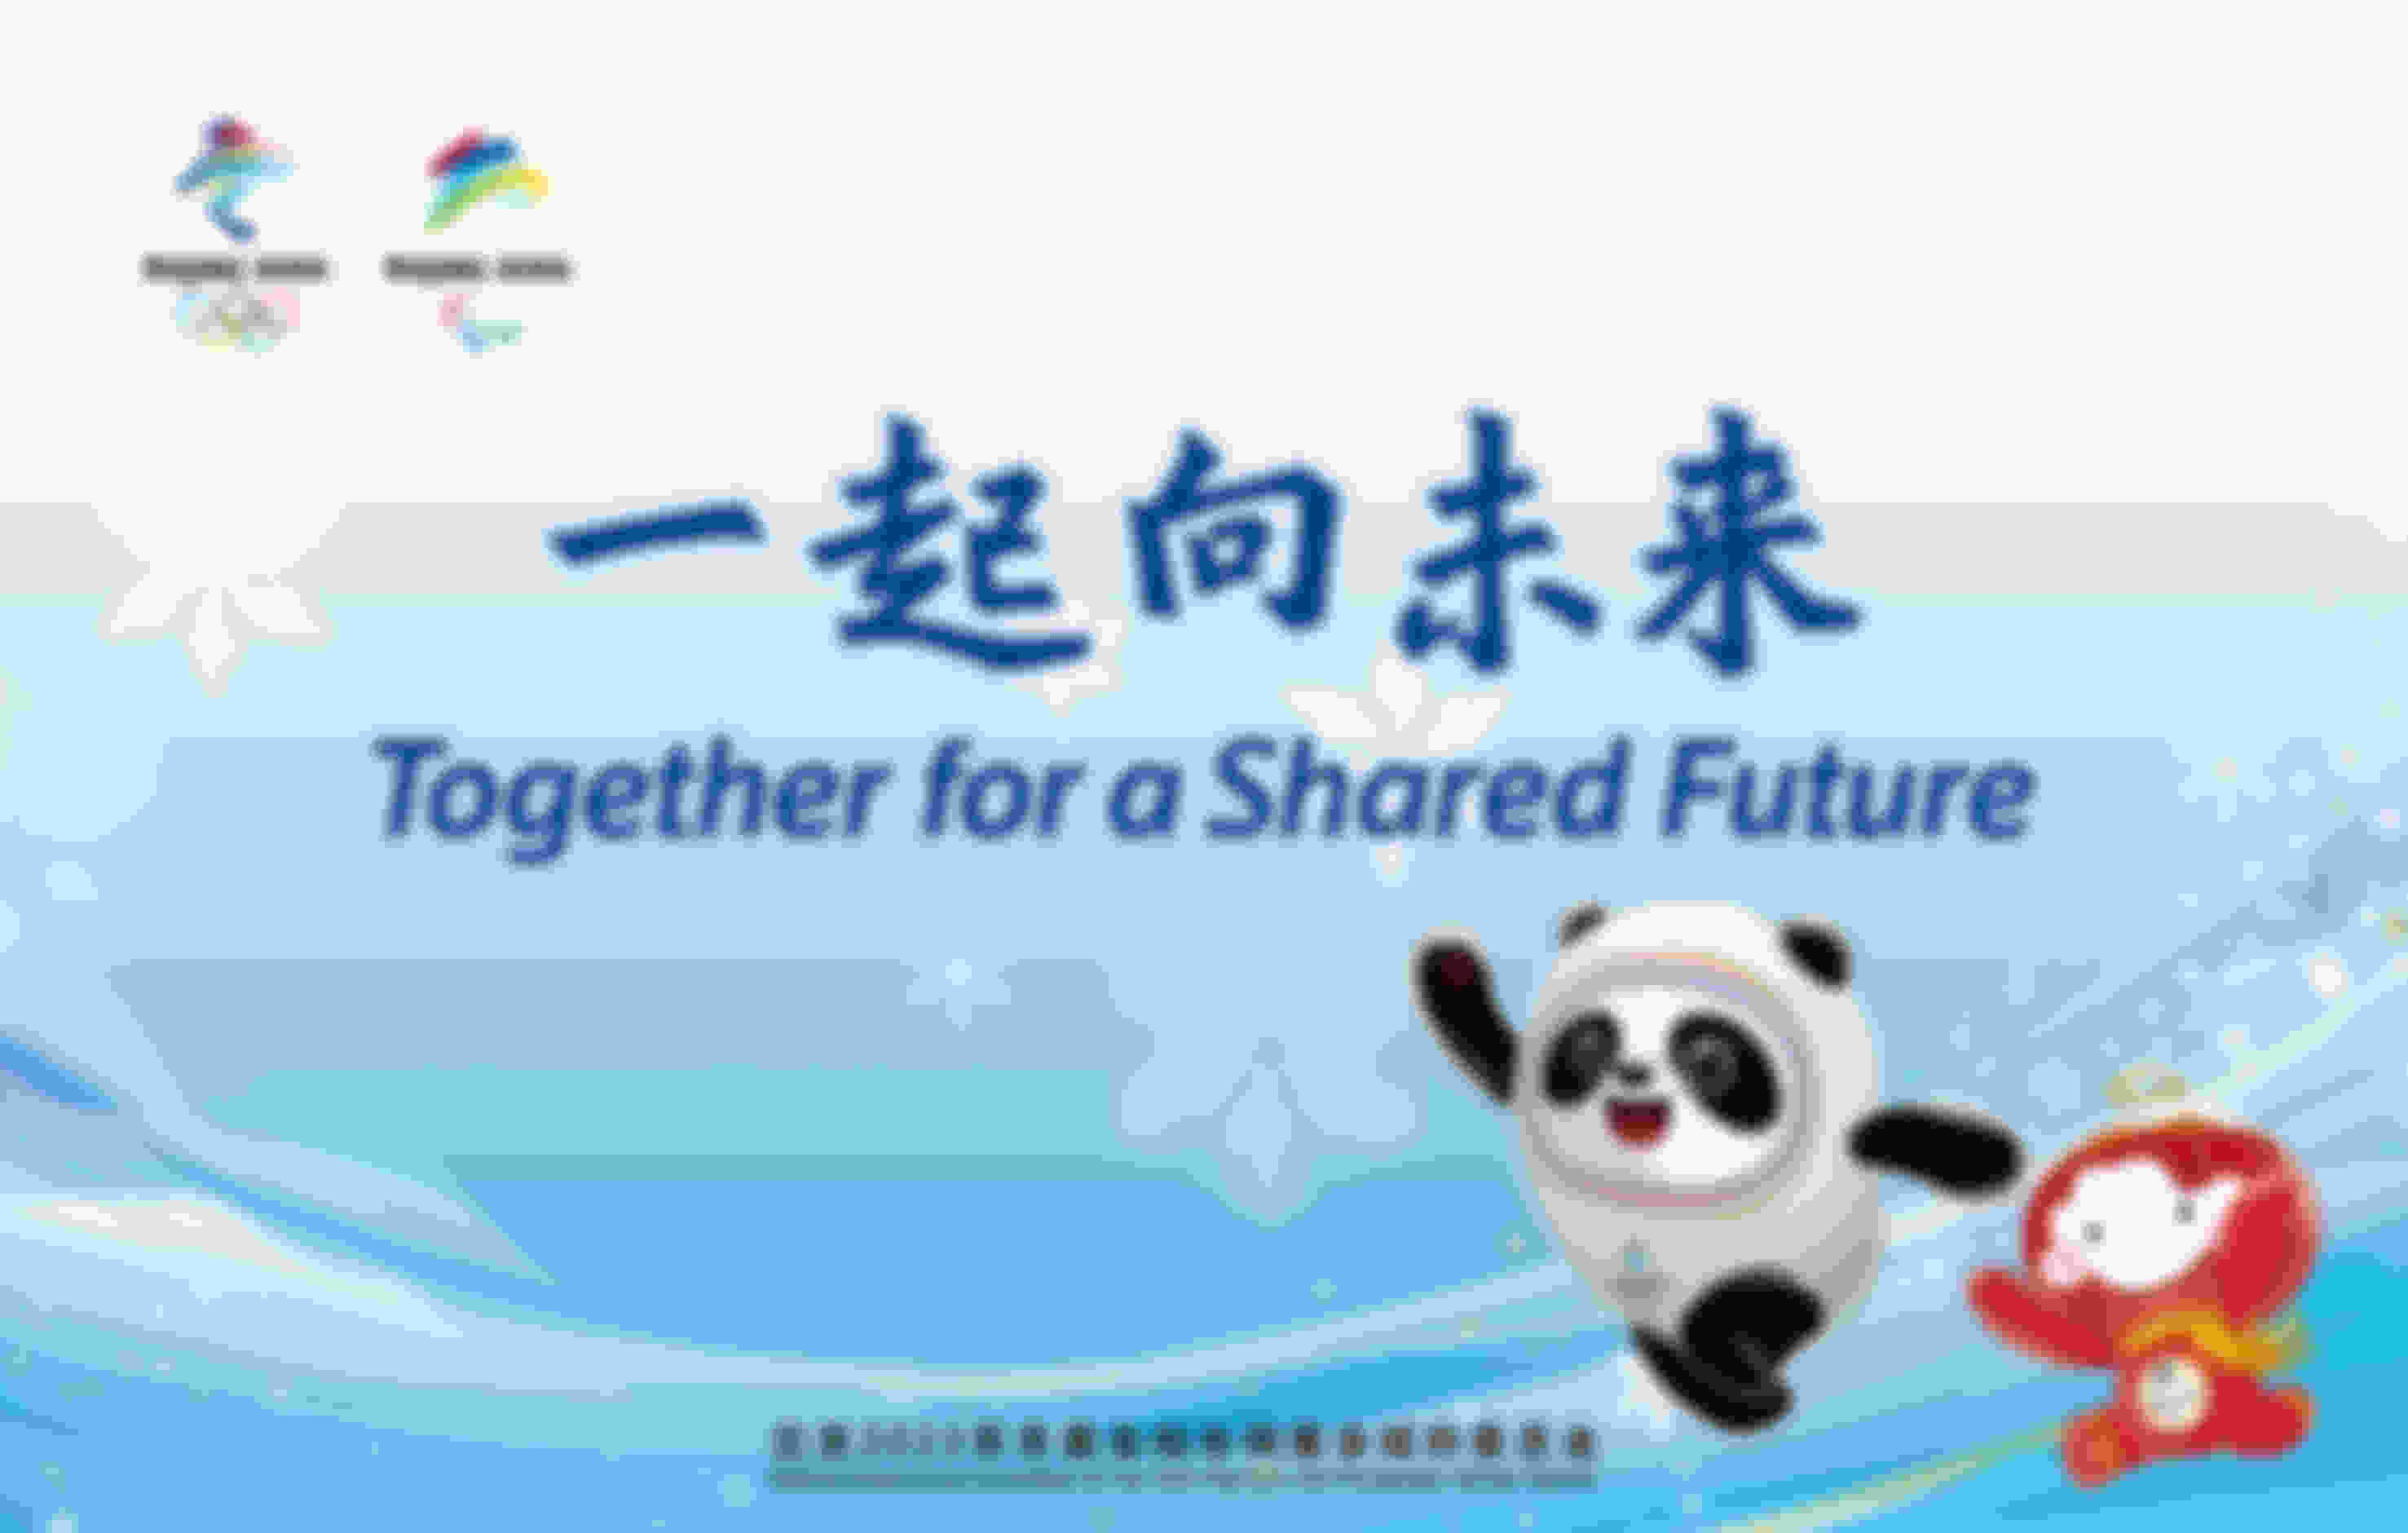 Beijing 2022 official motto